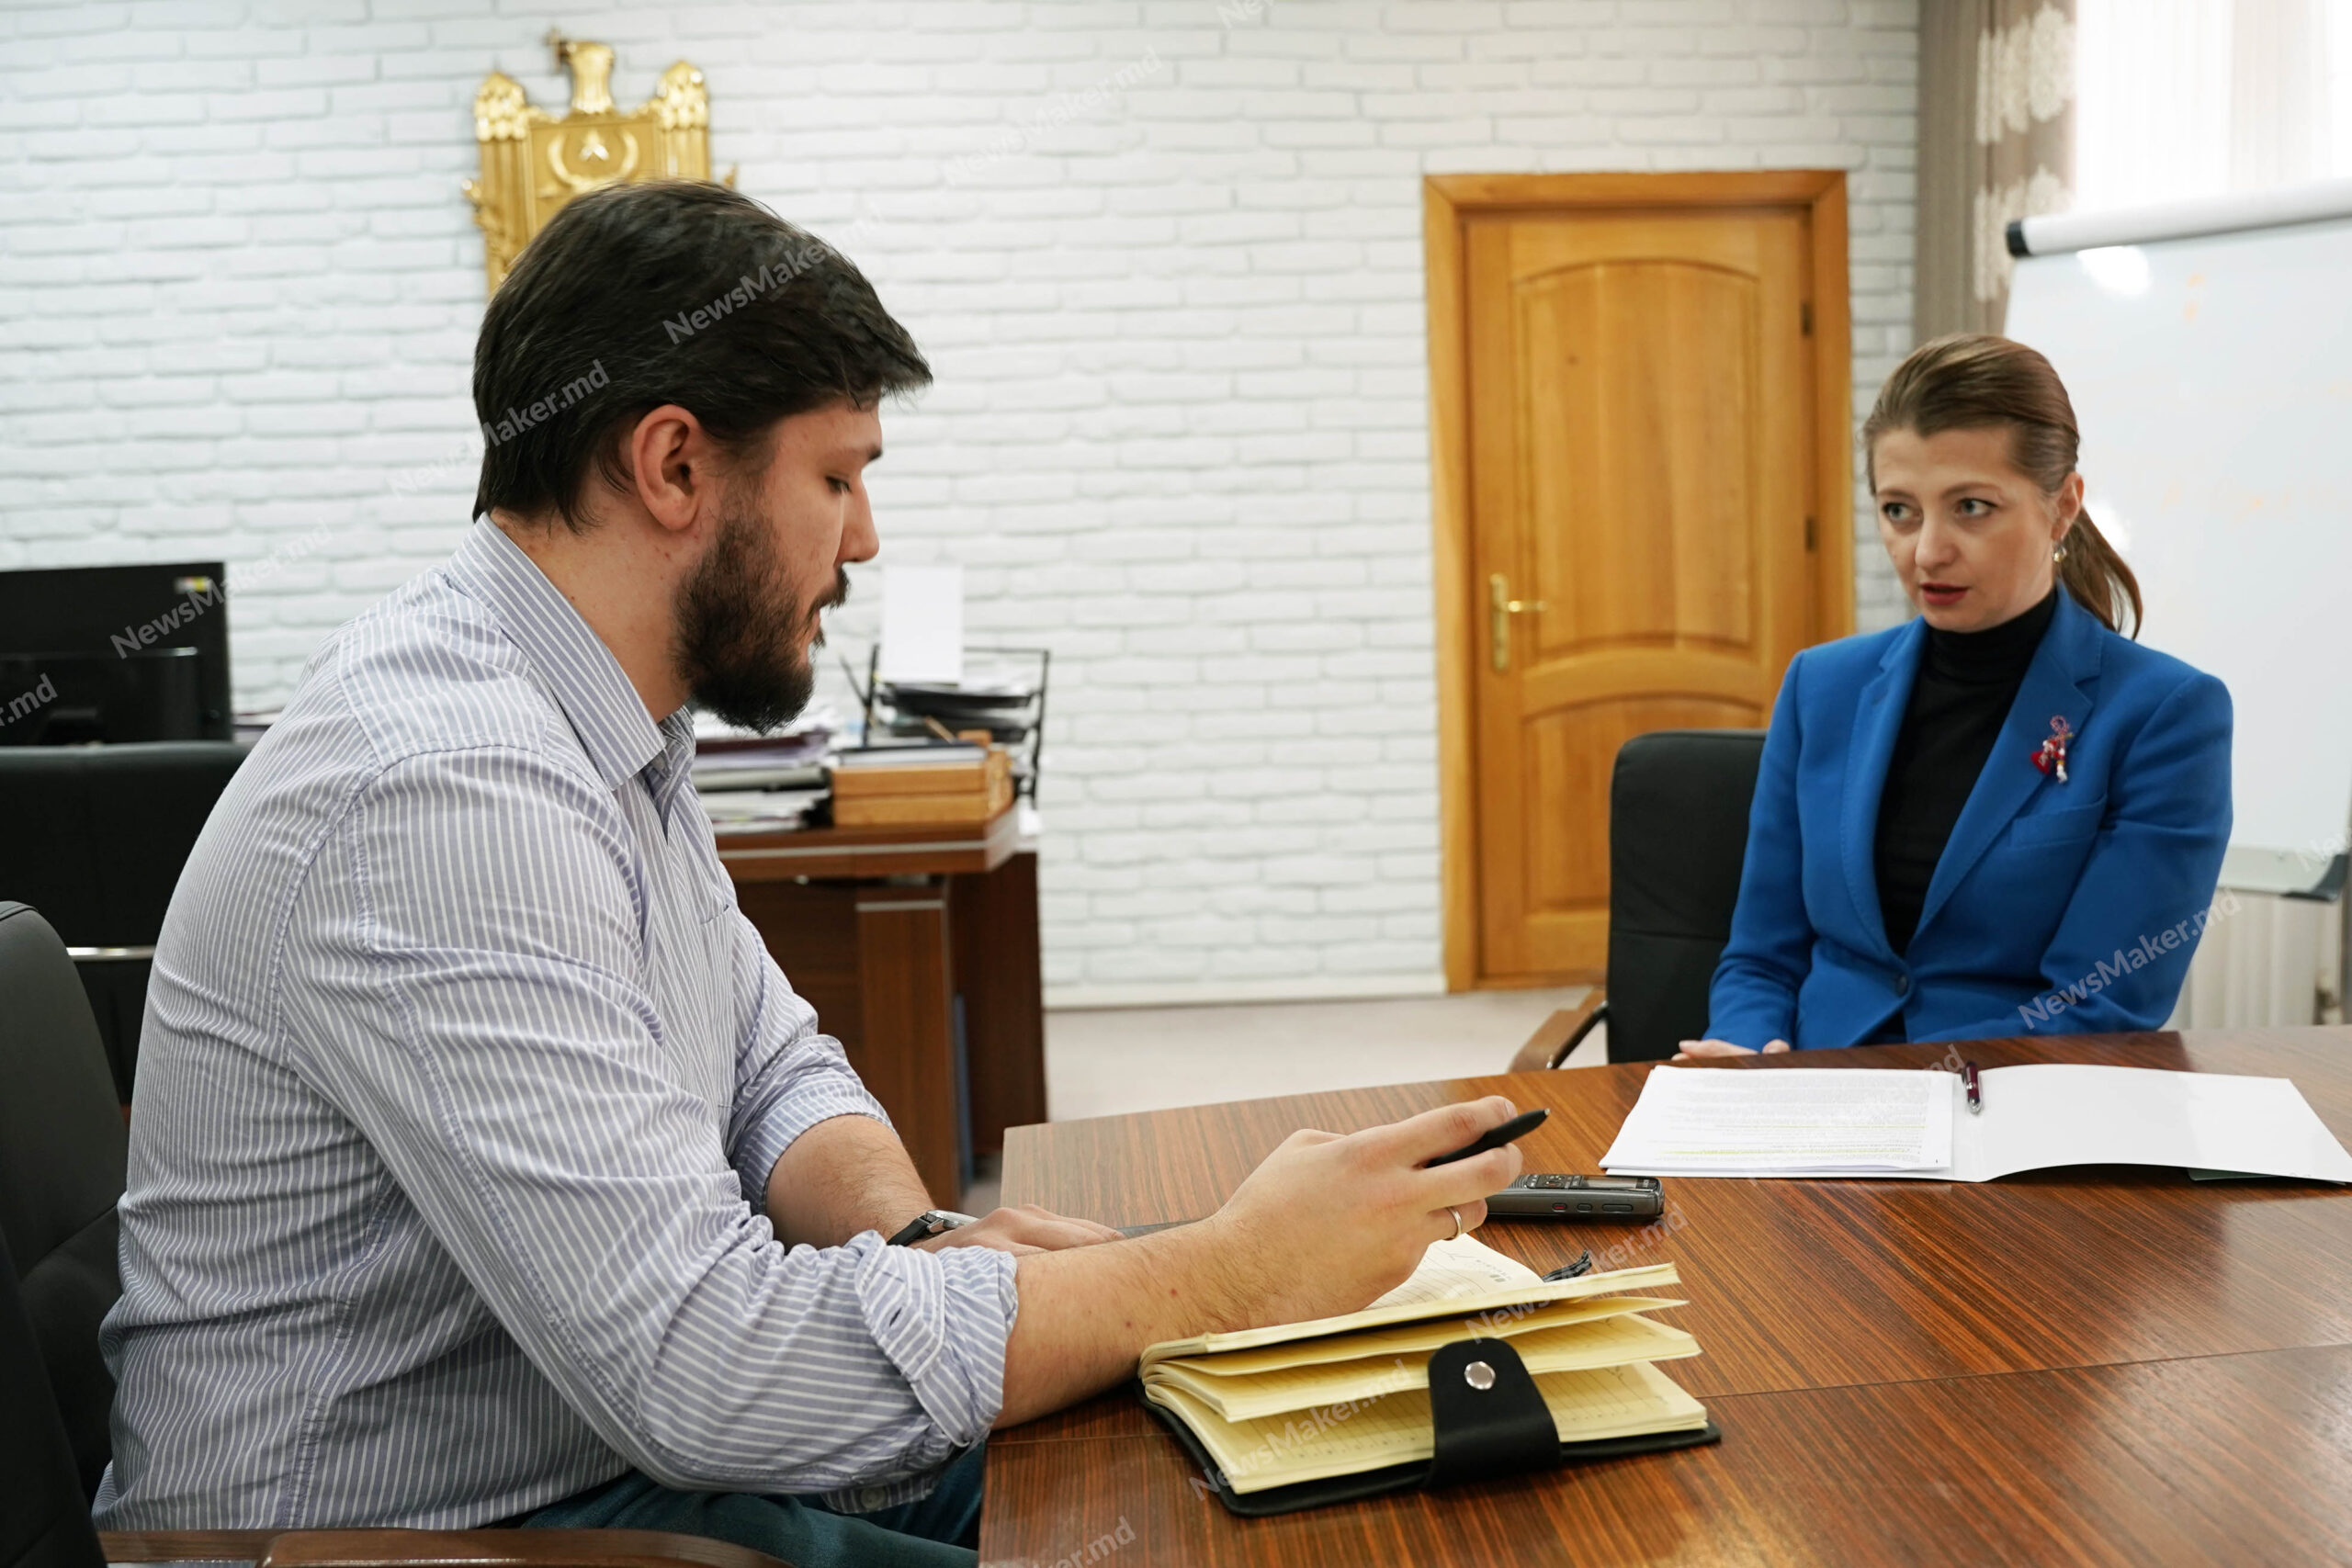 Молдова останется без судей и прокуроров? Министр юстиции – о Vetting-е, «грязных» деньгах, деле «Шор» и оправдании Стояногло. Интервью NM